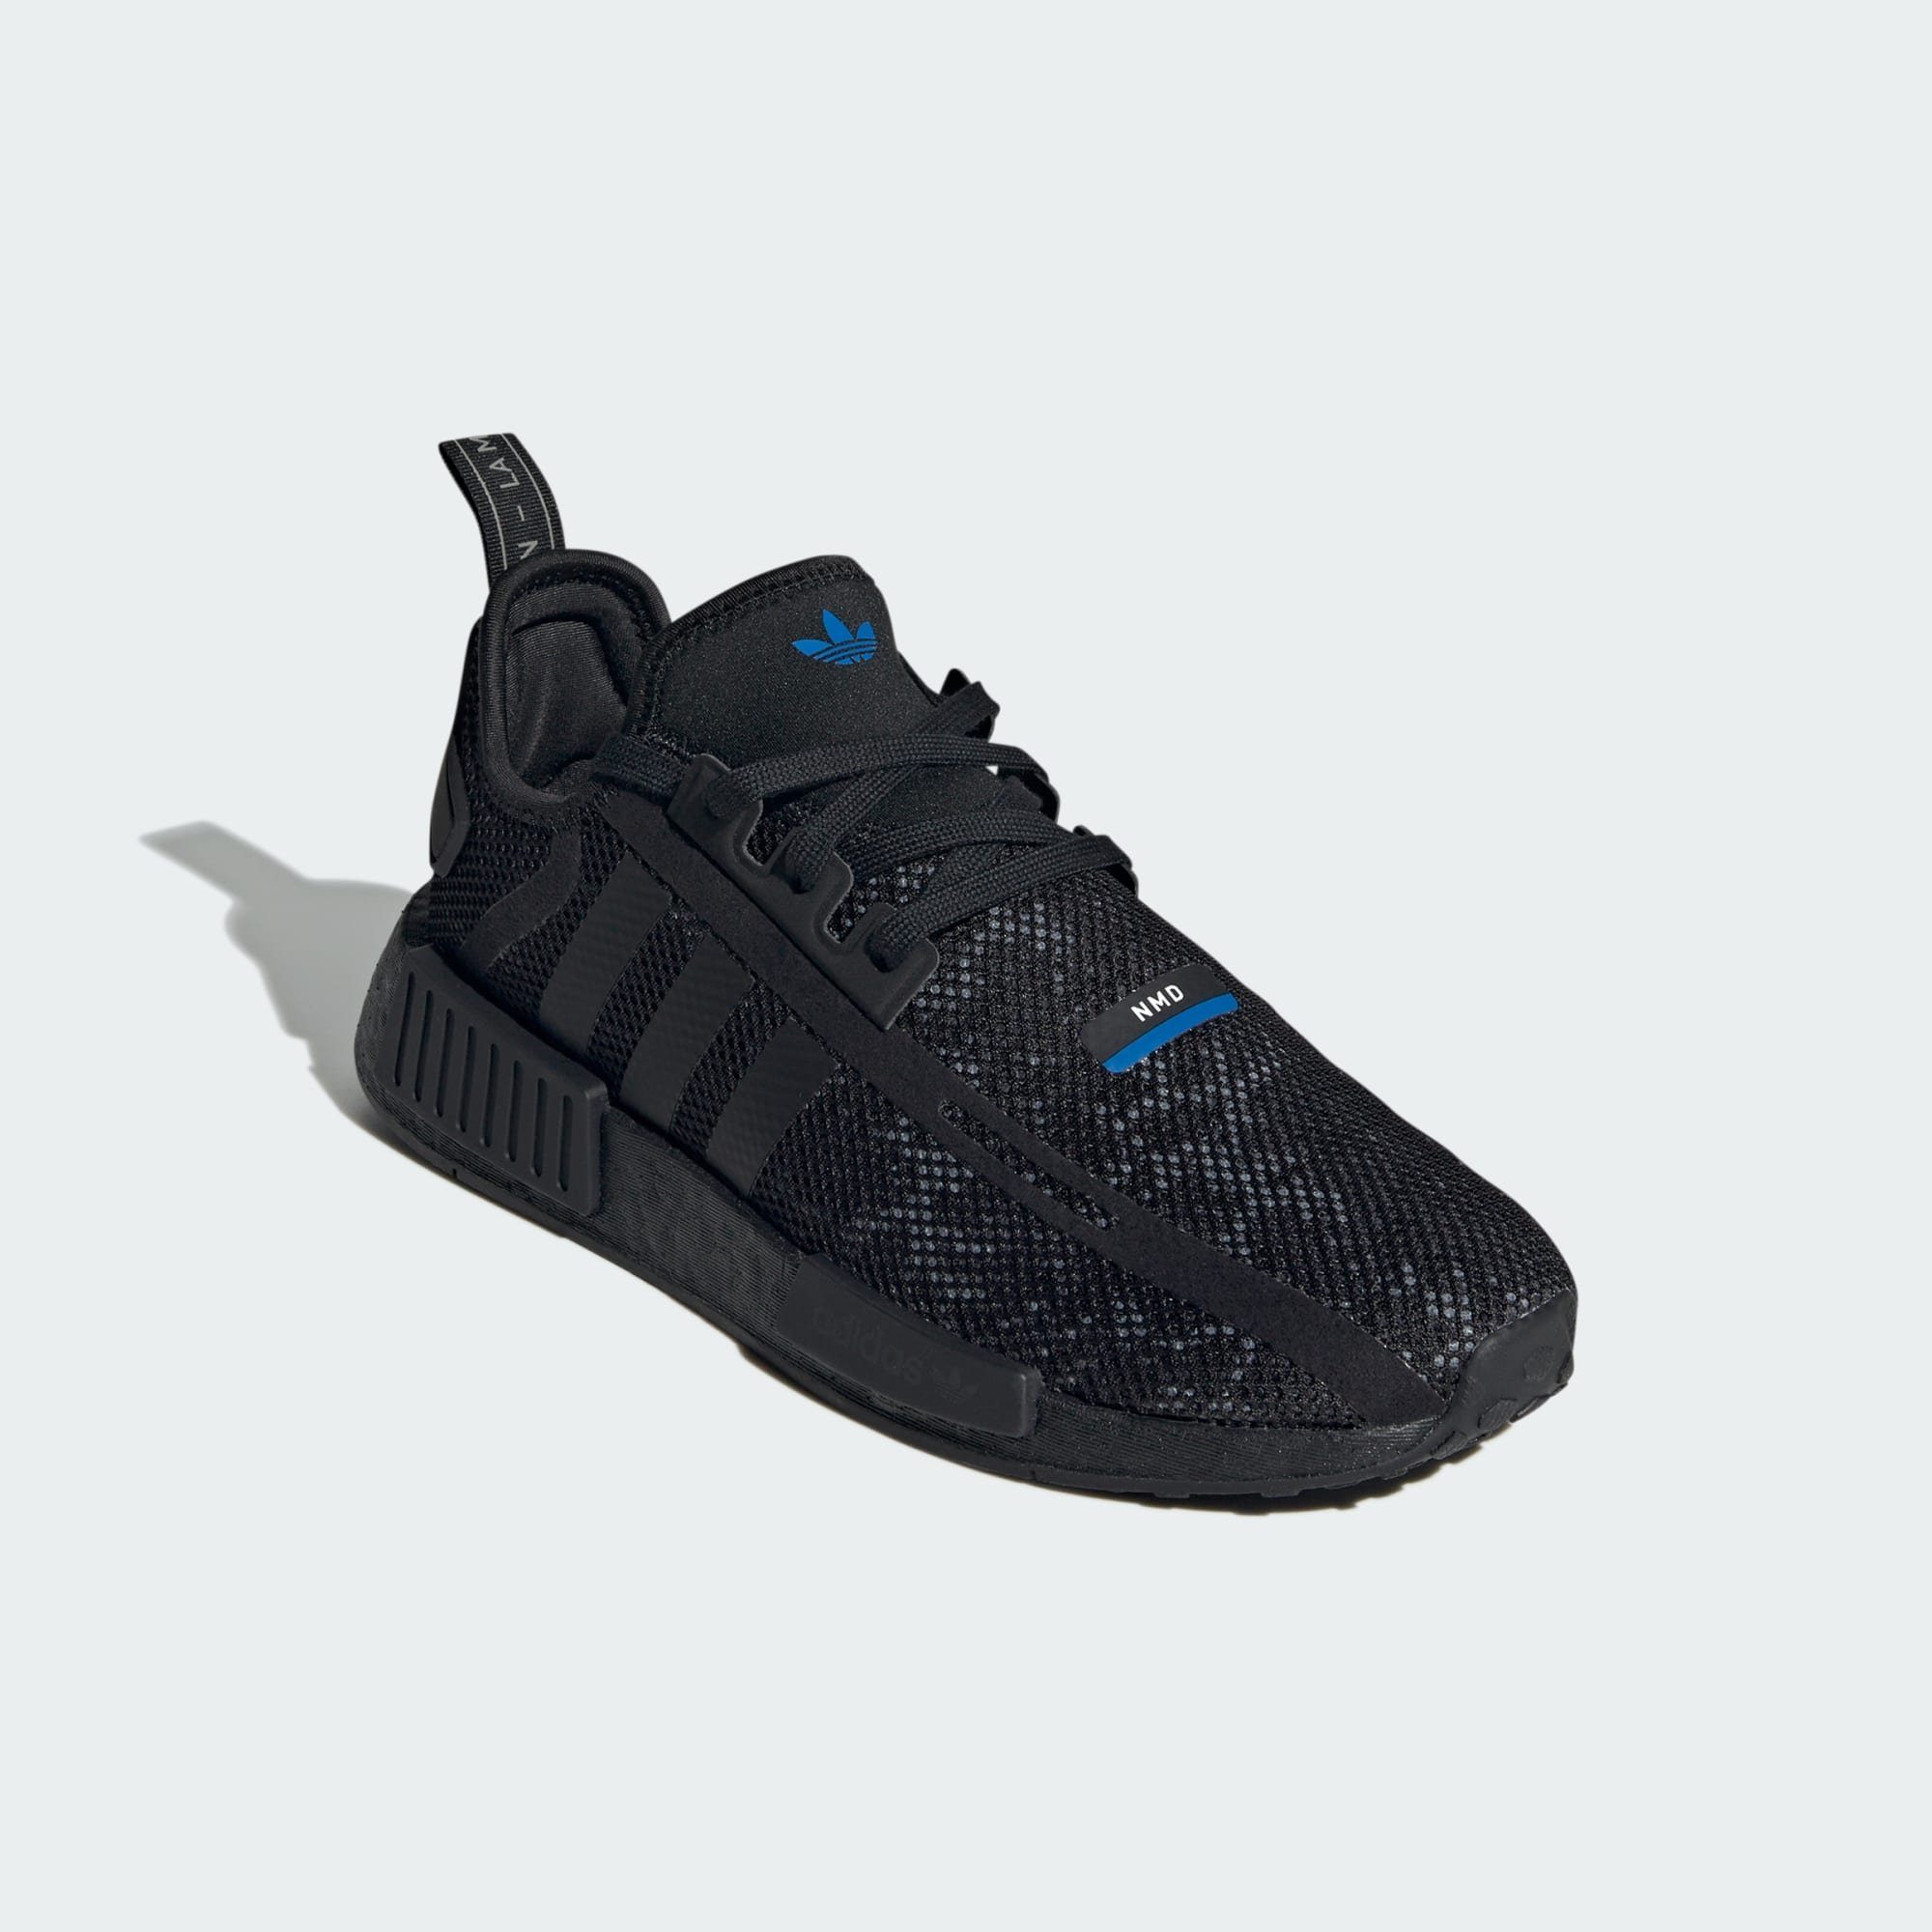 adidas Originals NMD_R1 SCHUH Sneaker Core Black / Carbon / Grey Five